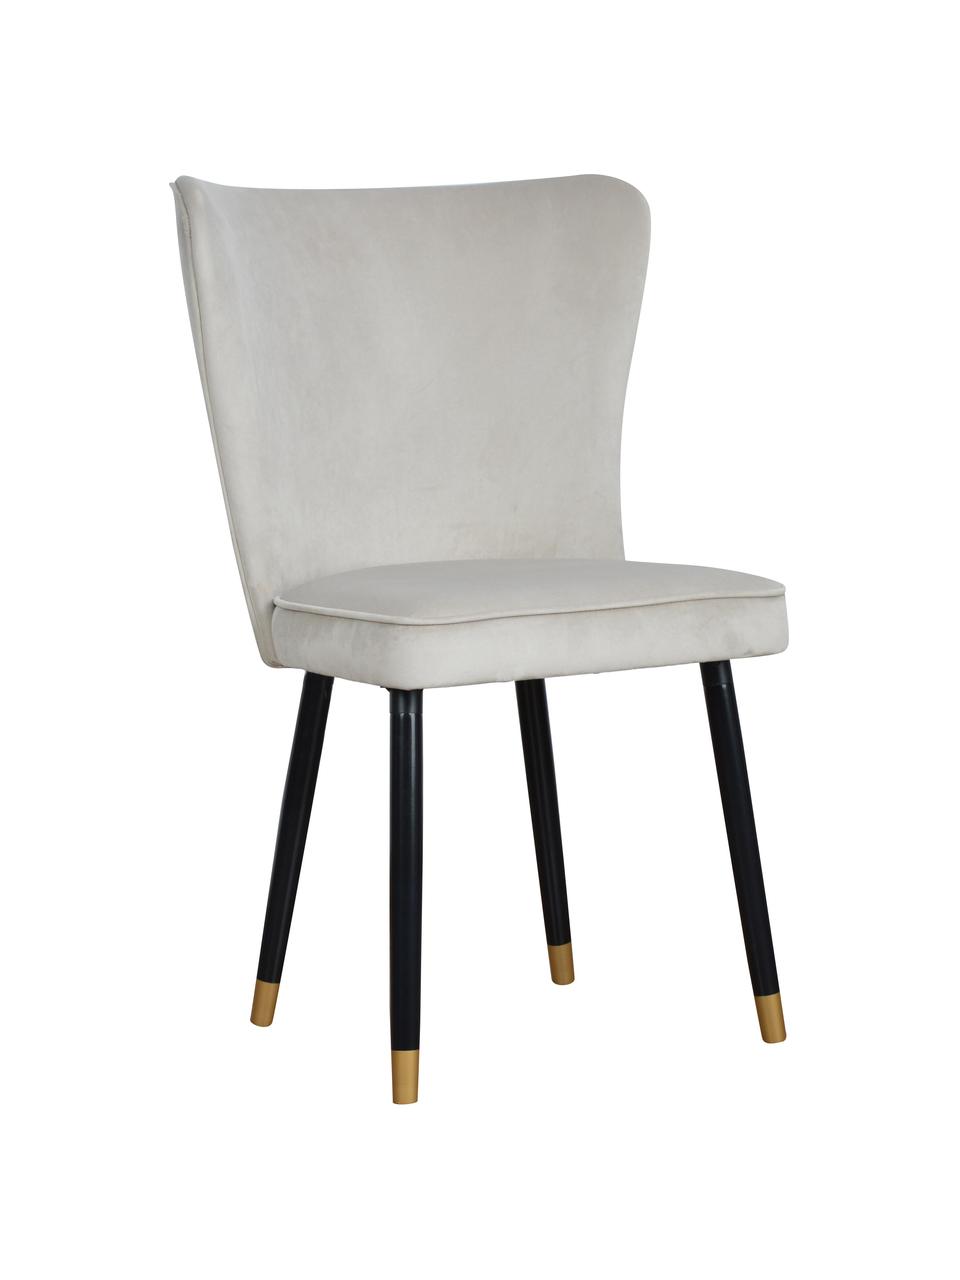 Krzesło tapicerowane z aksamitu Monti, Tapicerka: aksamit (100% poliester), Nogi: drewno naturalne, fornir, Jasnoszary aksamit, S 55 x G 66 cm